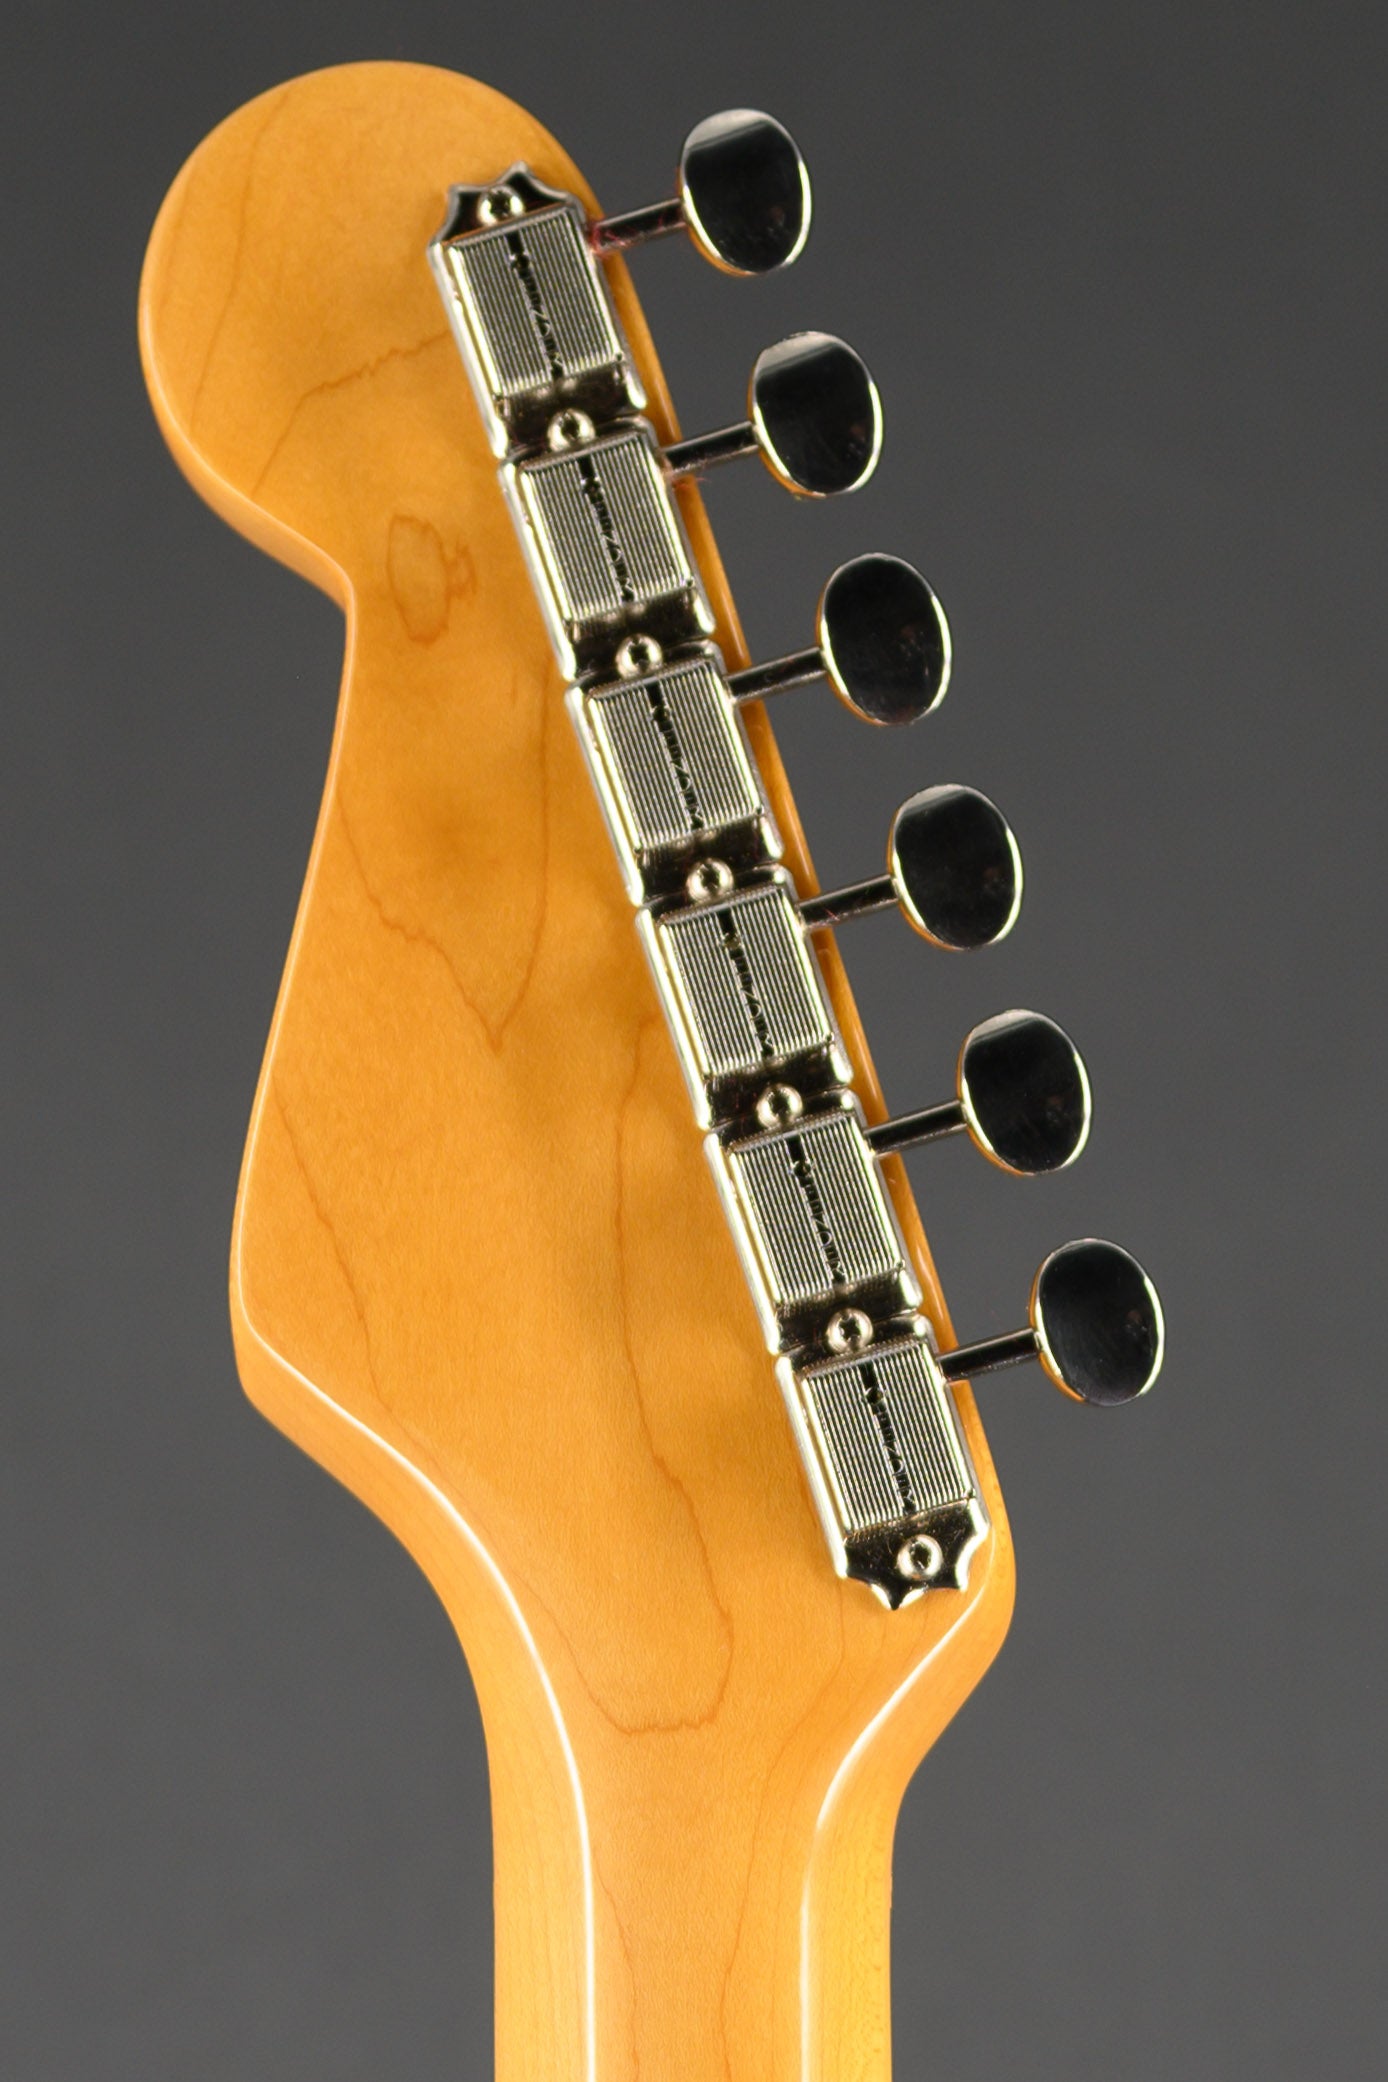 Eric Johnson Signature '54 "Virginia" Stratocaster - 2-Tone Sunburst